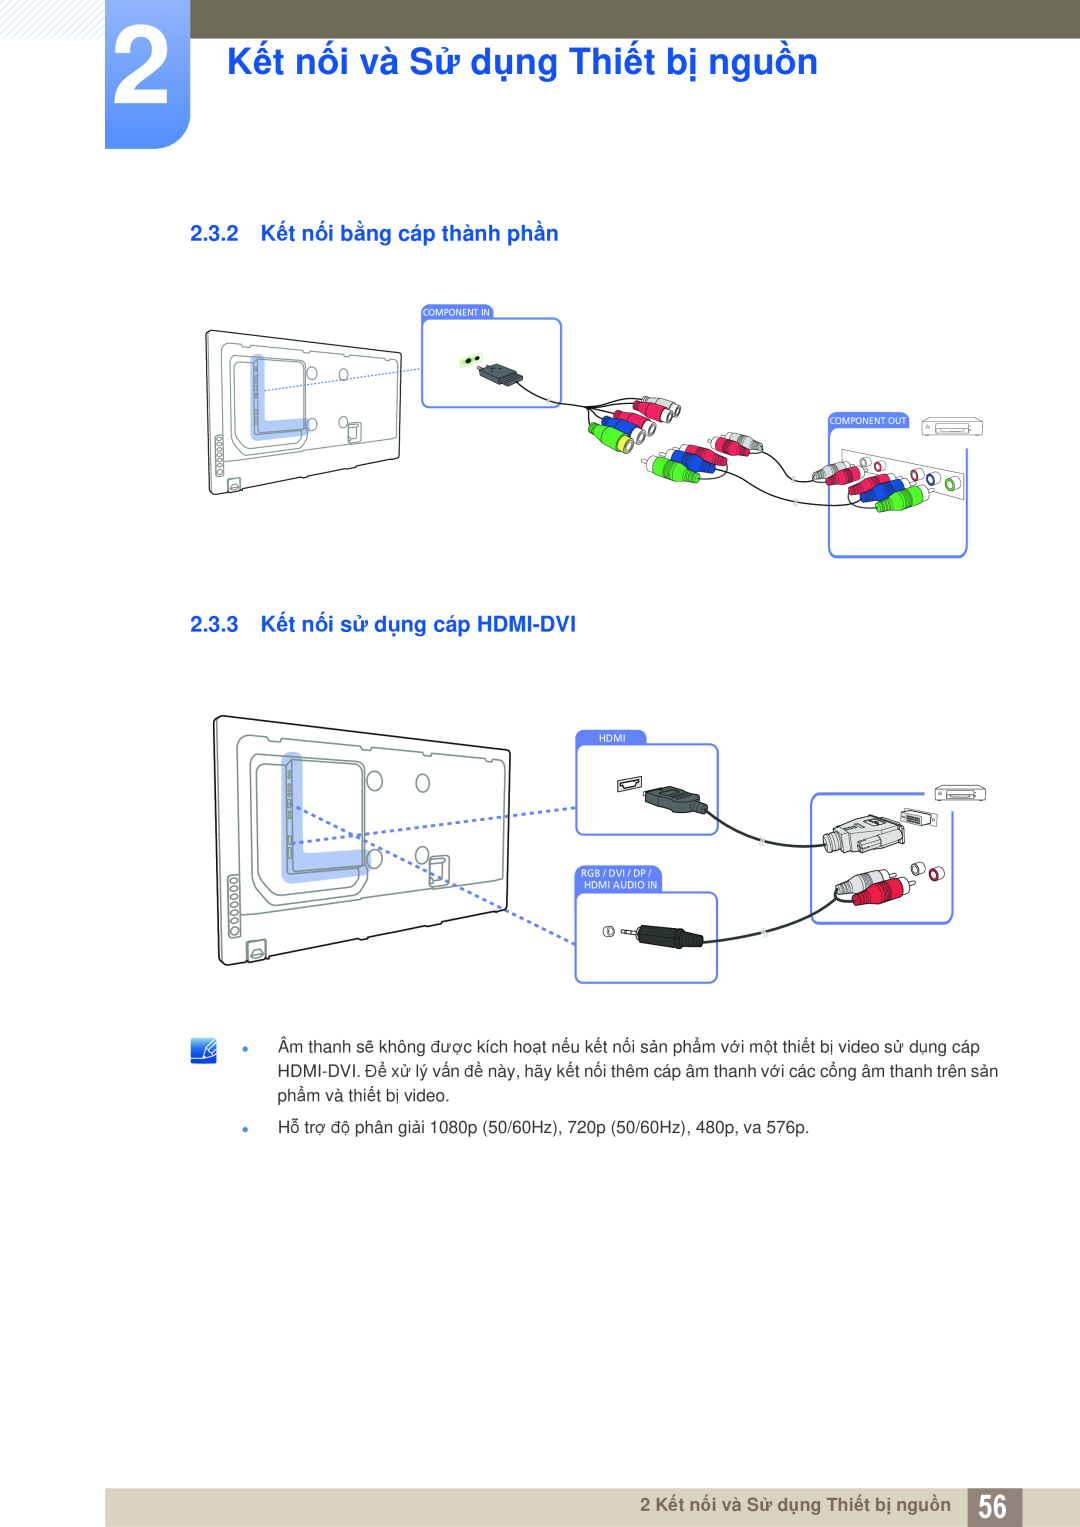 Samsung LH40MEPLGC/XY, LH46DEPLGC/EN, LH55MEPLGC/XY 2.3.2 Kết nối bằng cáp thành phần, 2.3.3 Kết nối sử dụng cáp HDMI-DVI 